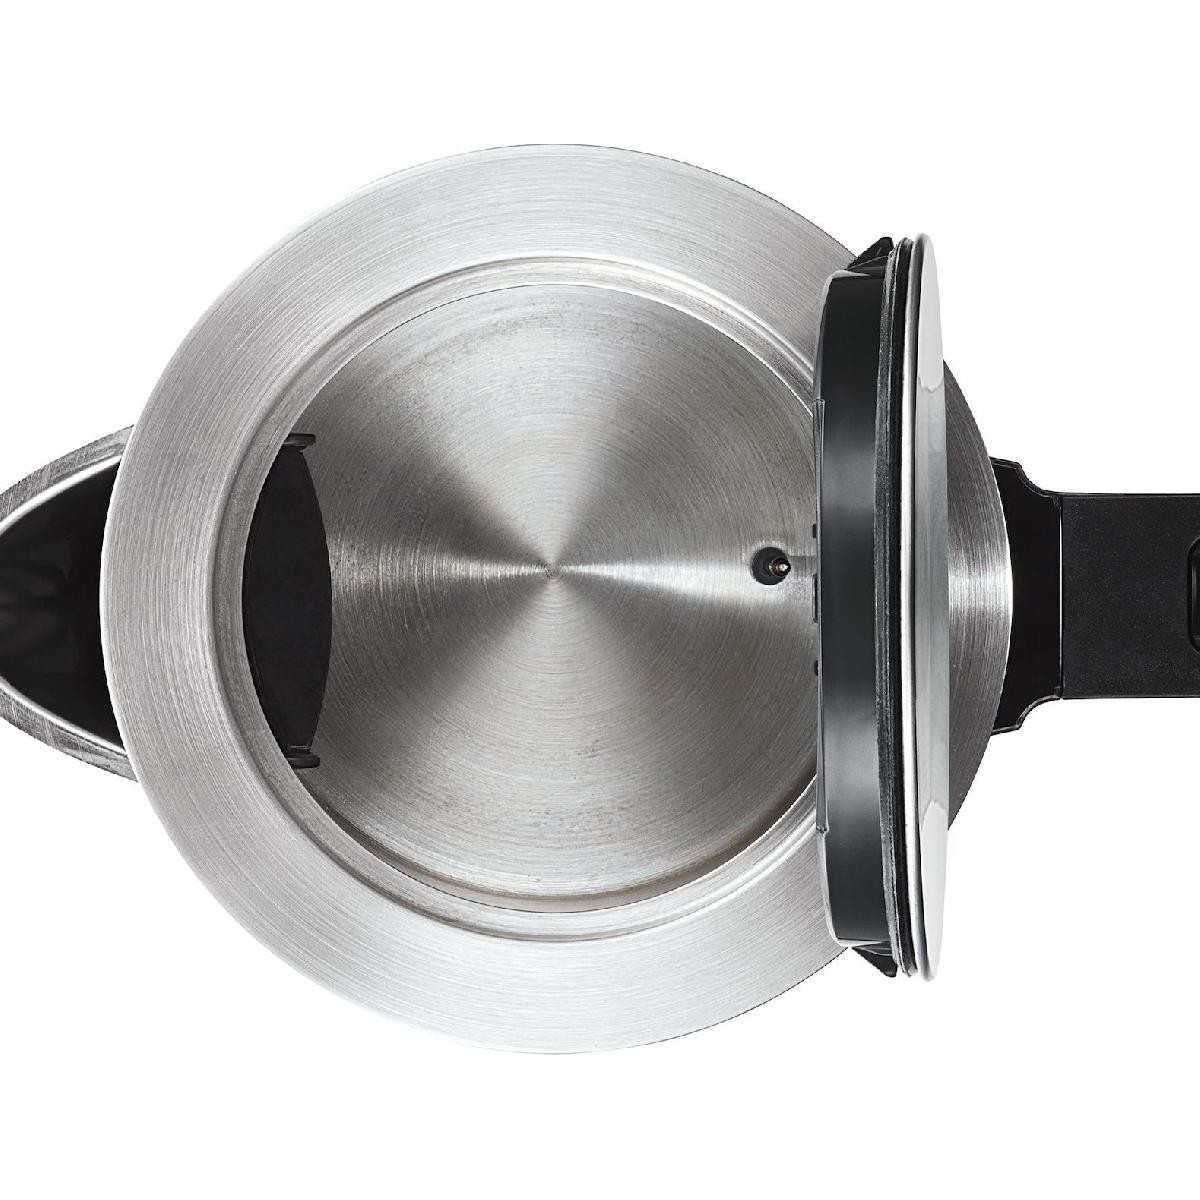 Bosch TWK7203 electric kettle 1.7 L Black,Stainless steel 1850 W